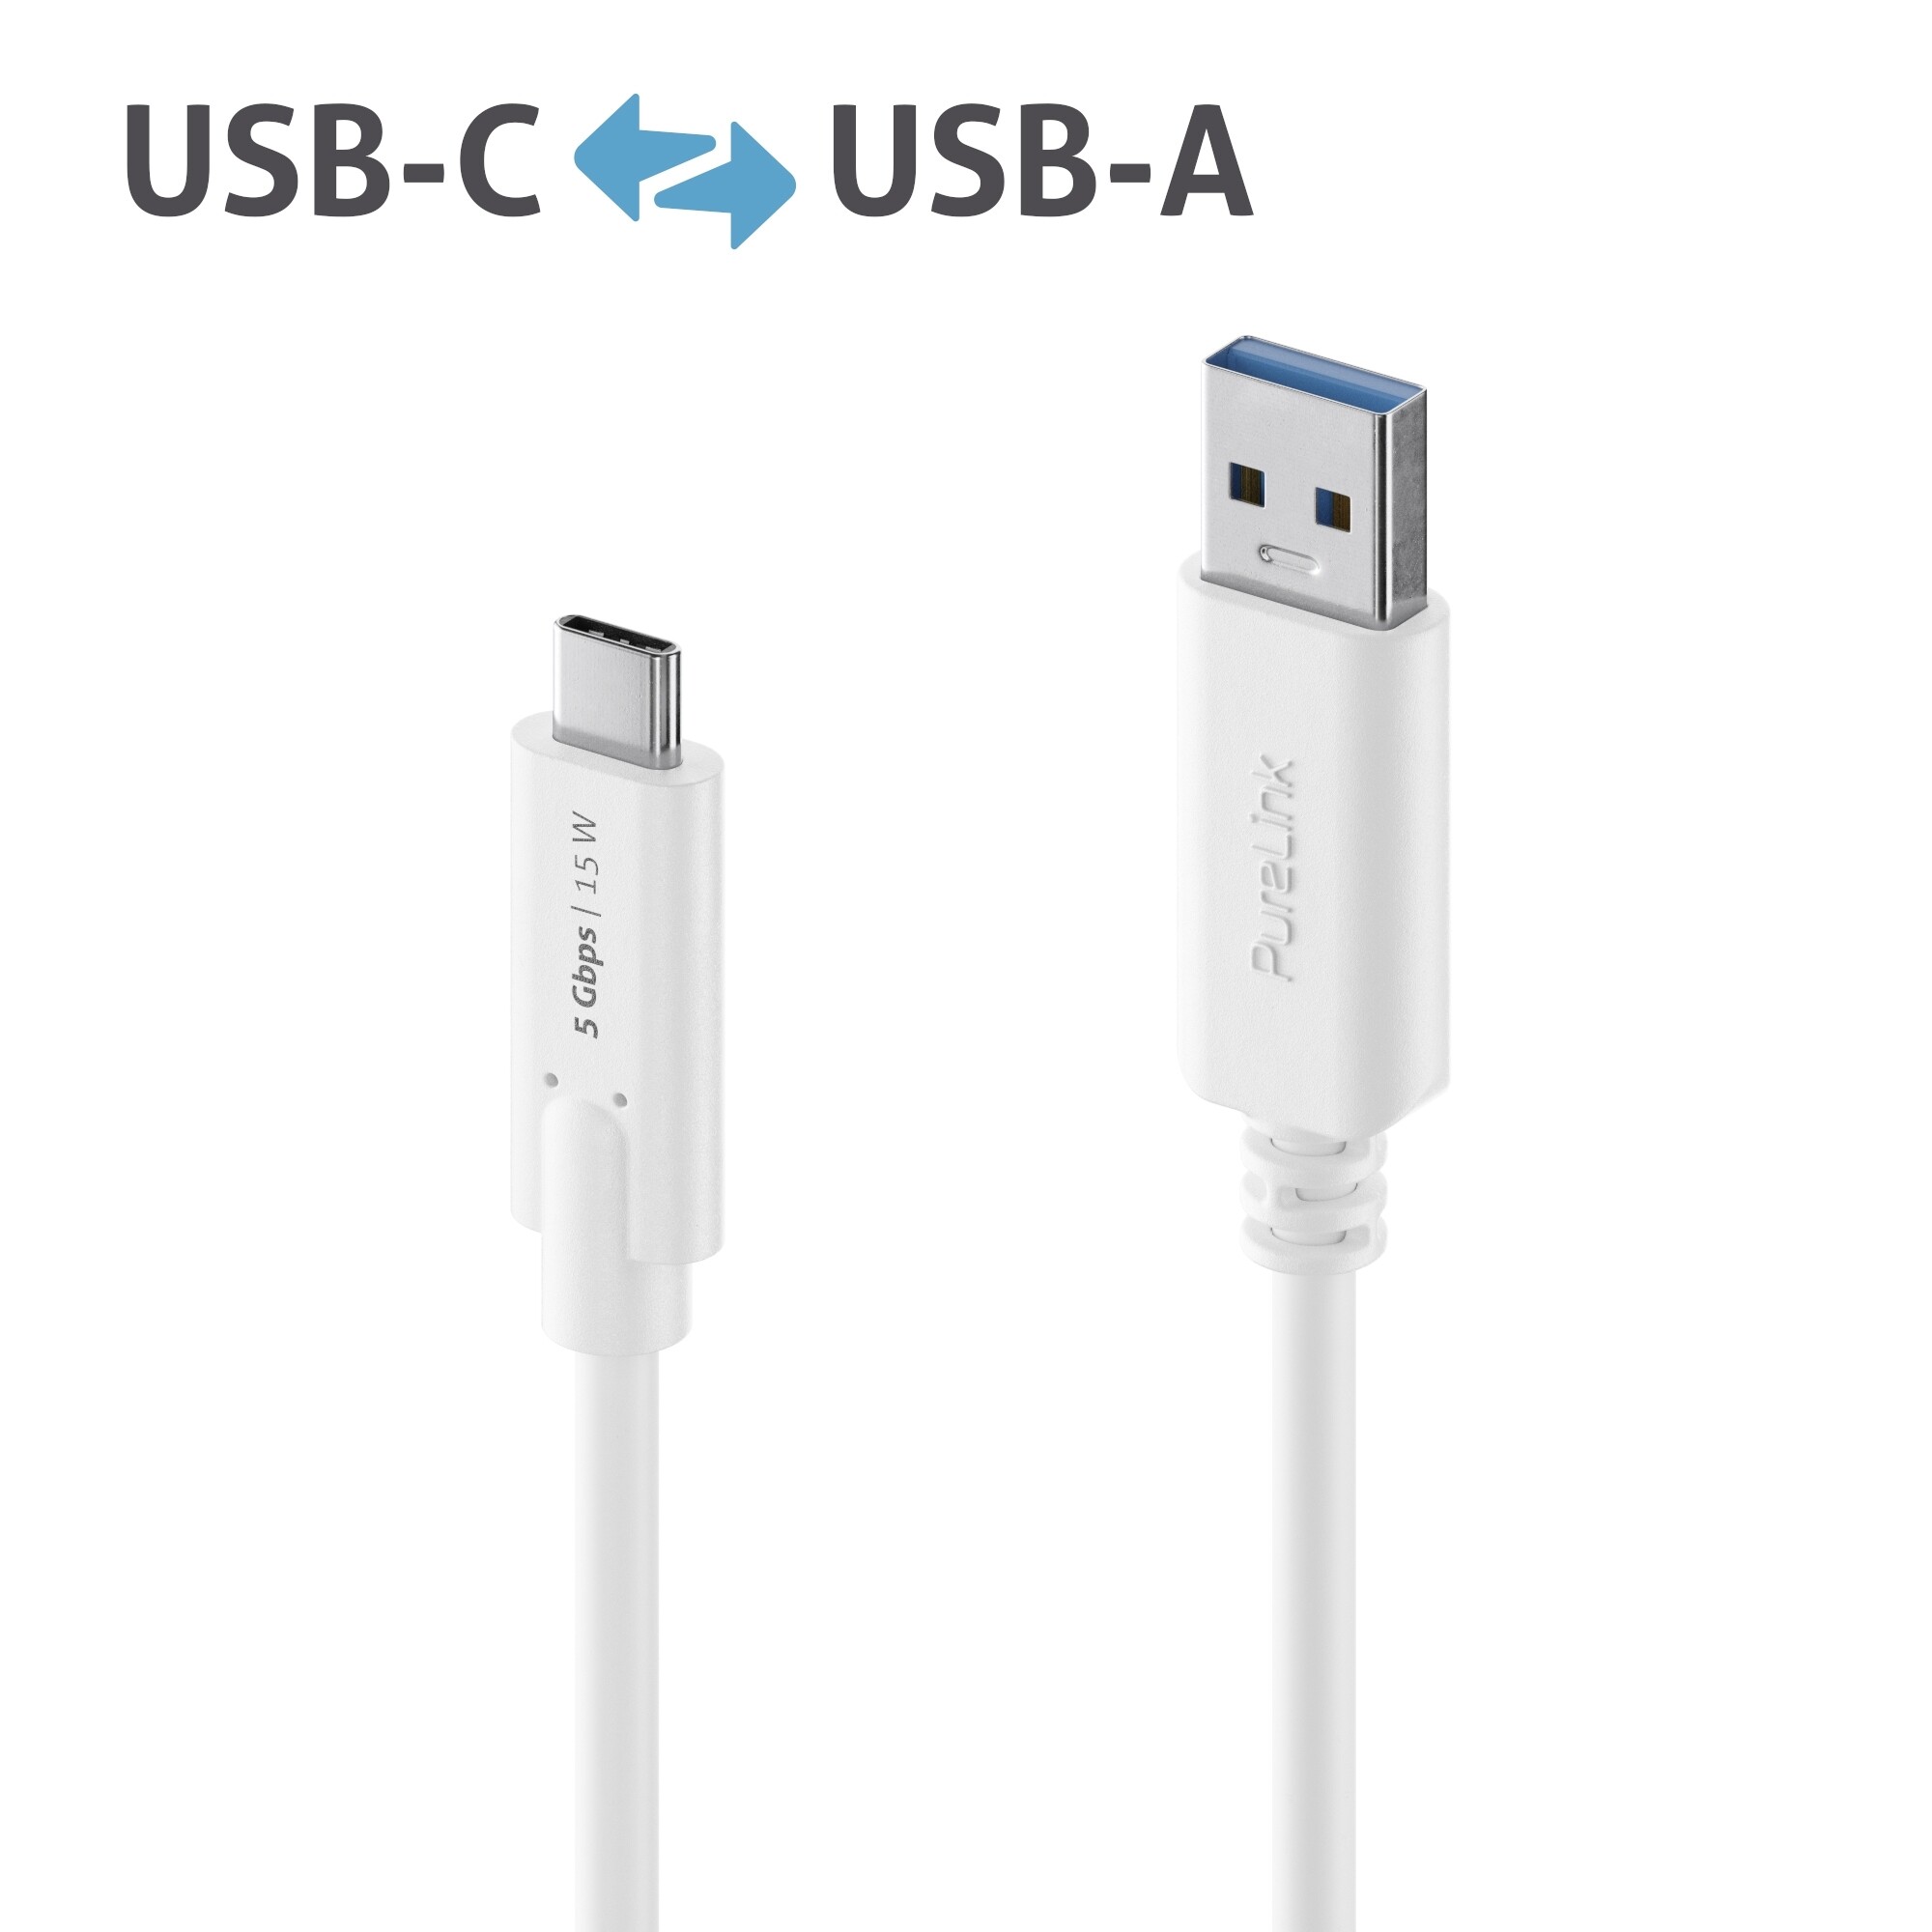 Purelink-IS2600-020-USB-C-auf-USB-A-Kabel-2m-weiss